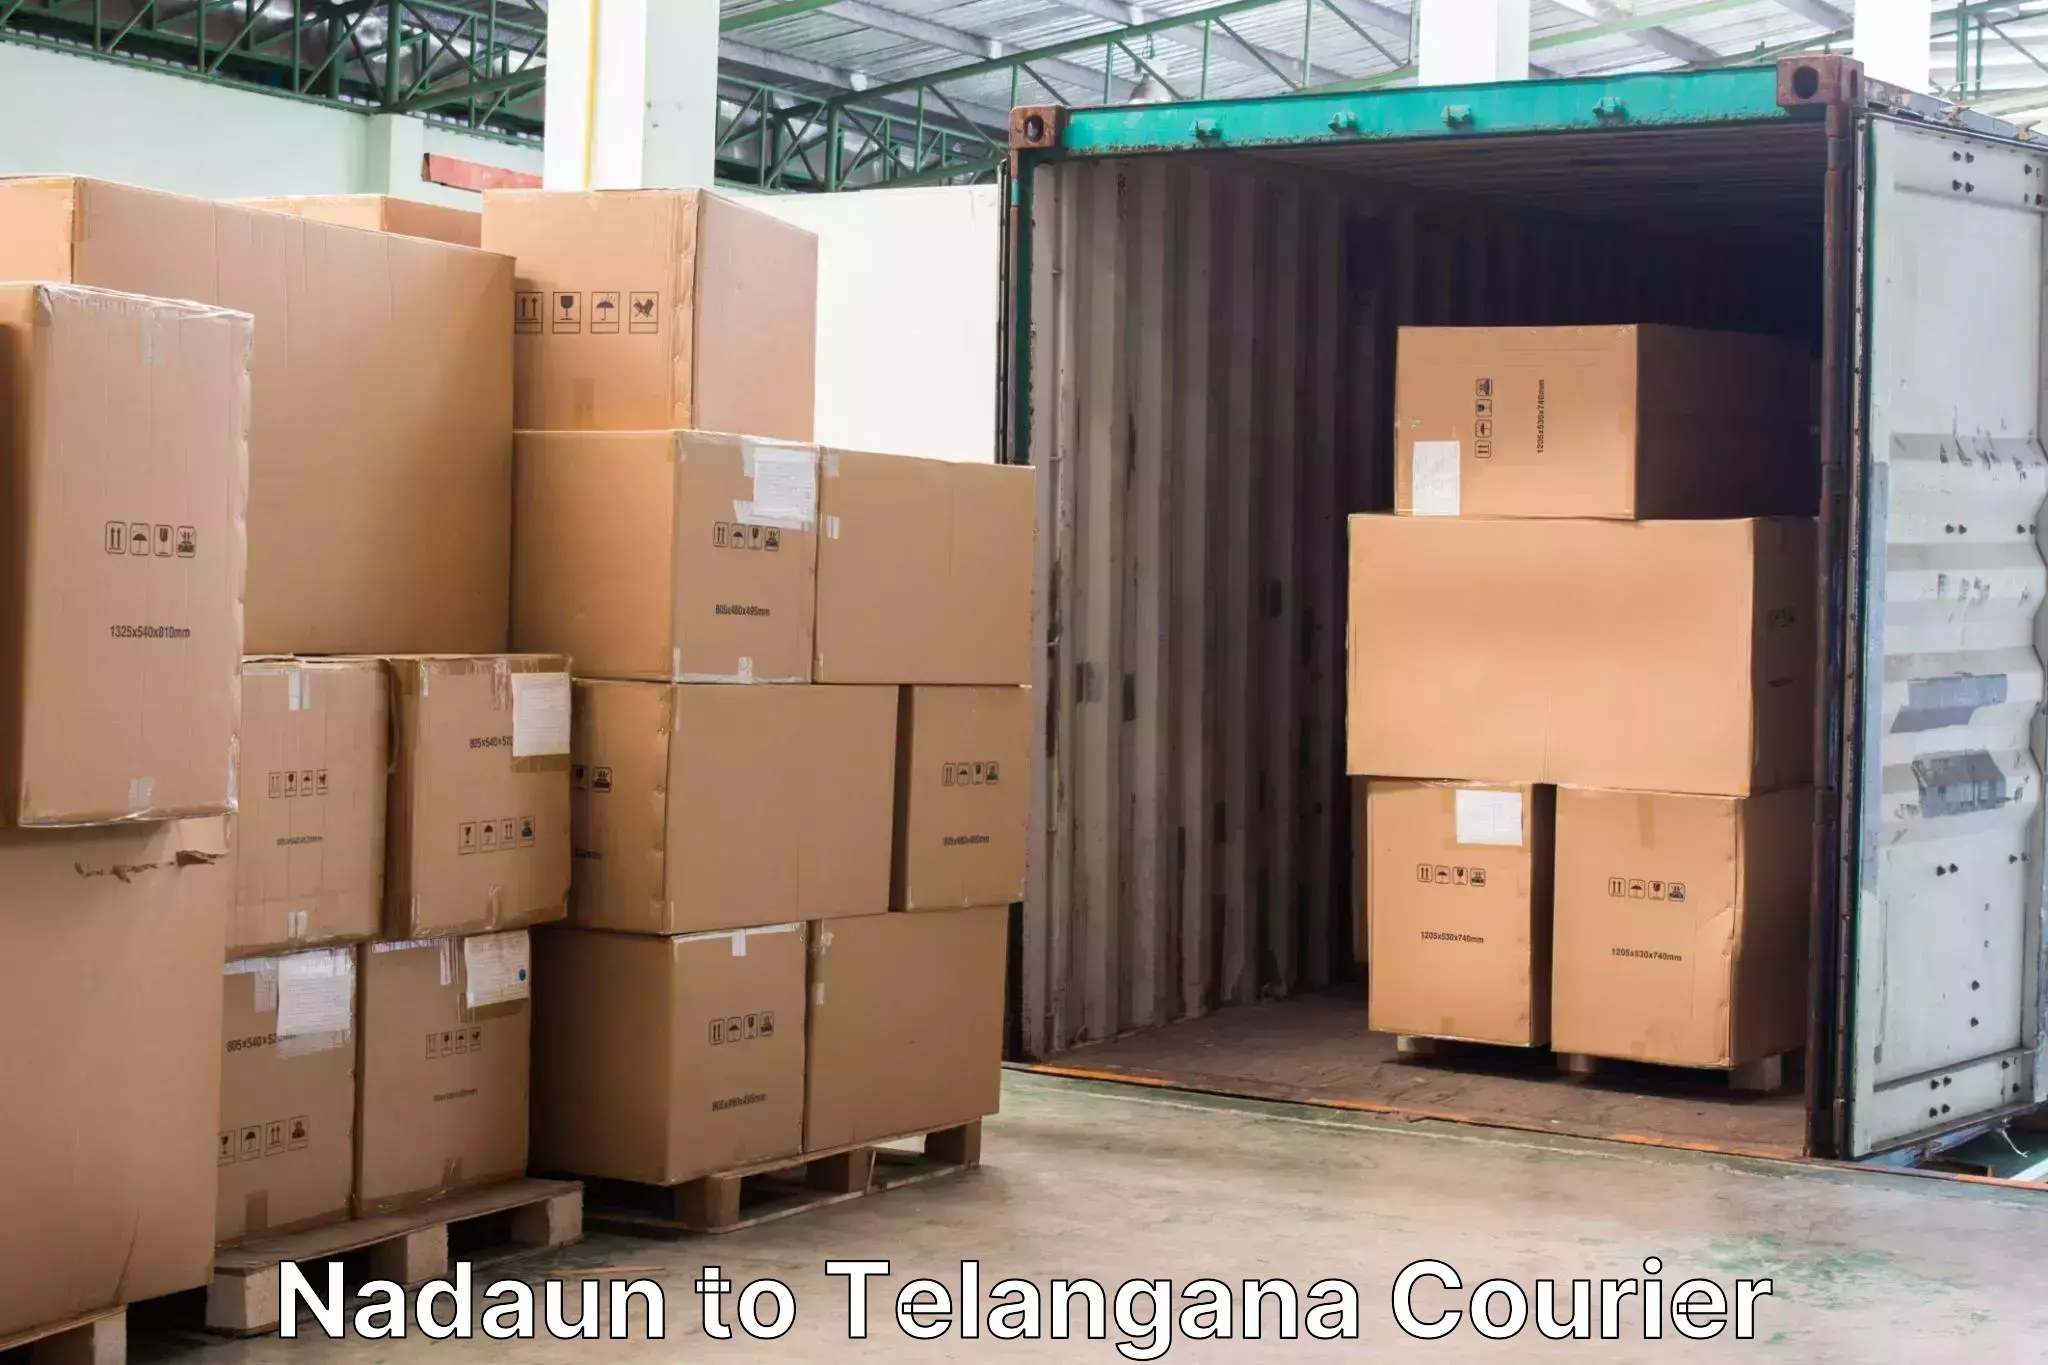 Baggage transport professionals Nadaun to Bijinapalle